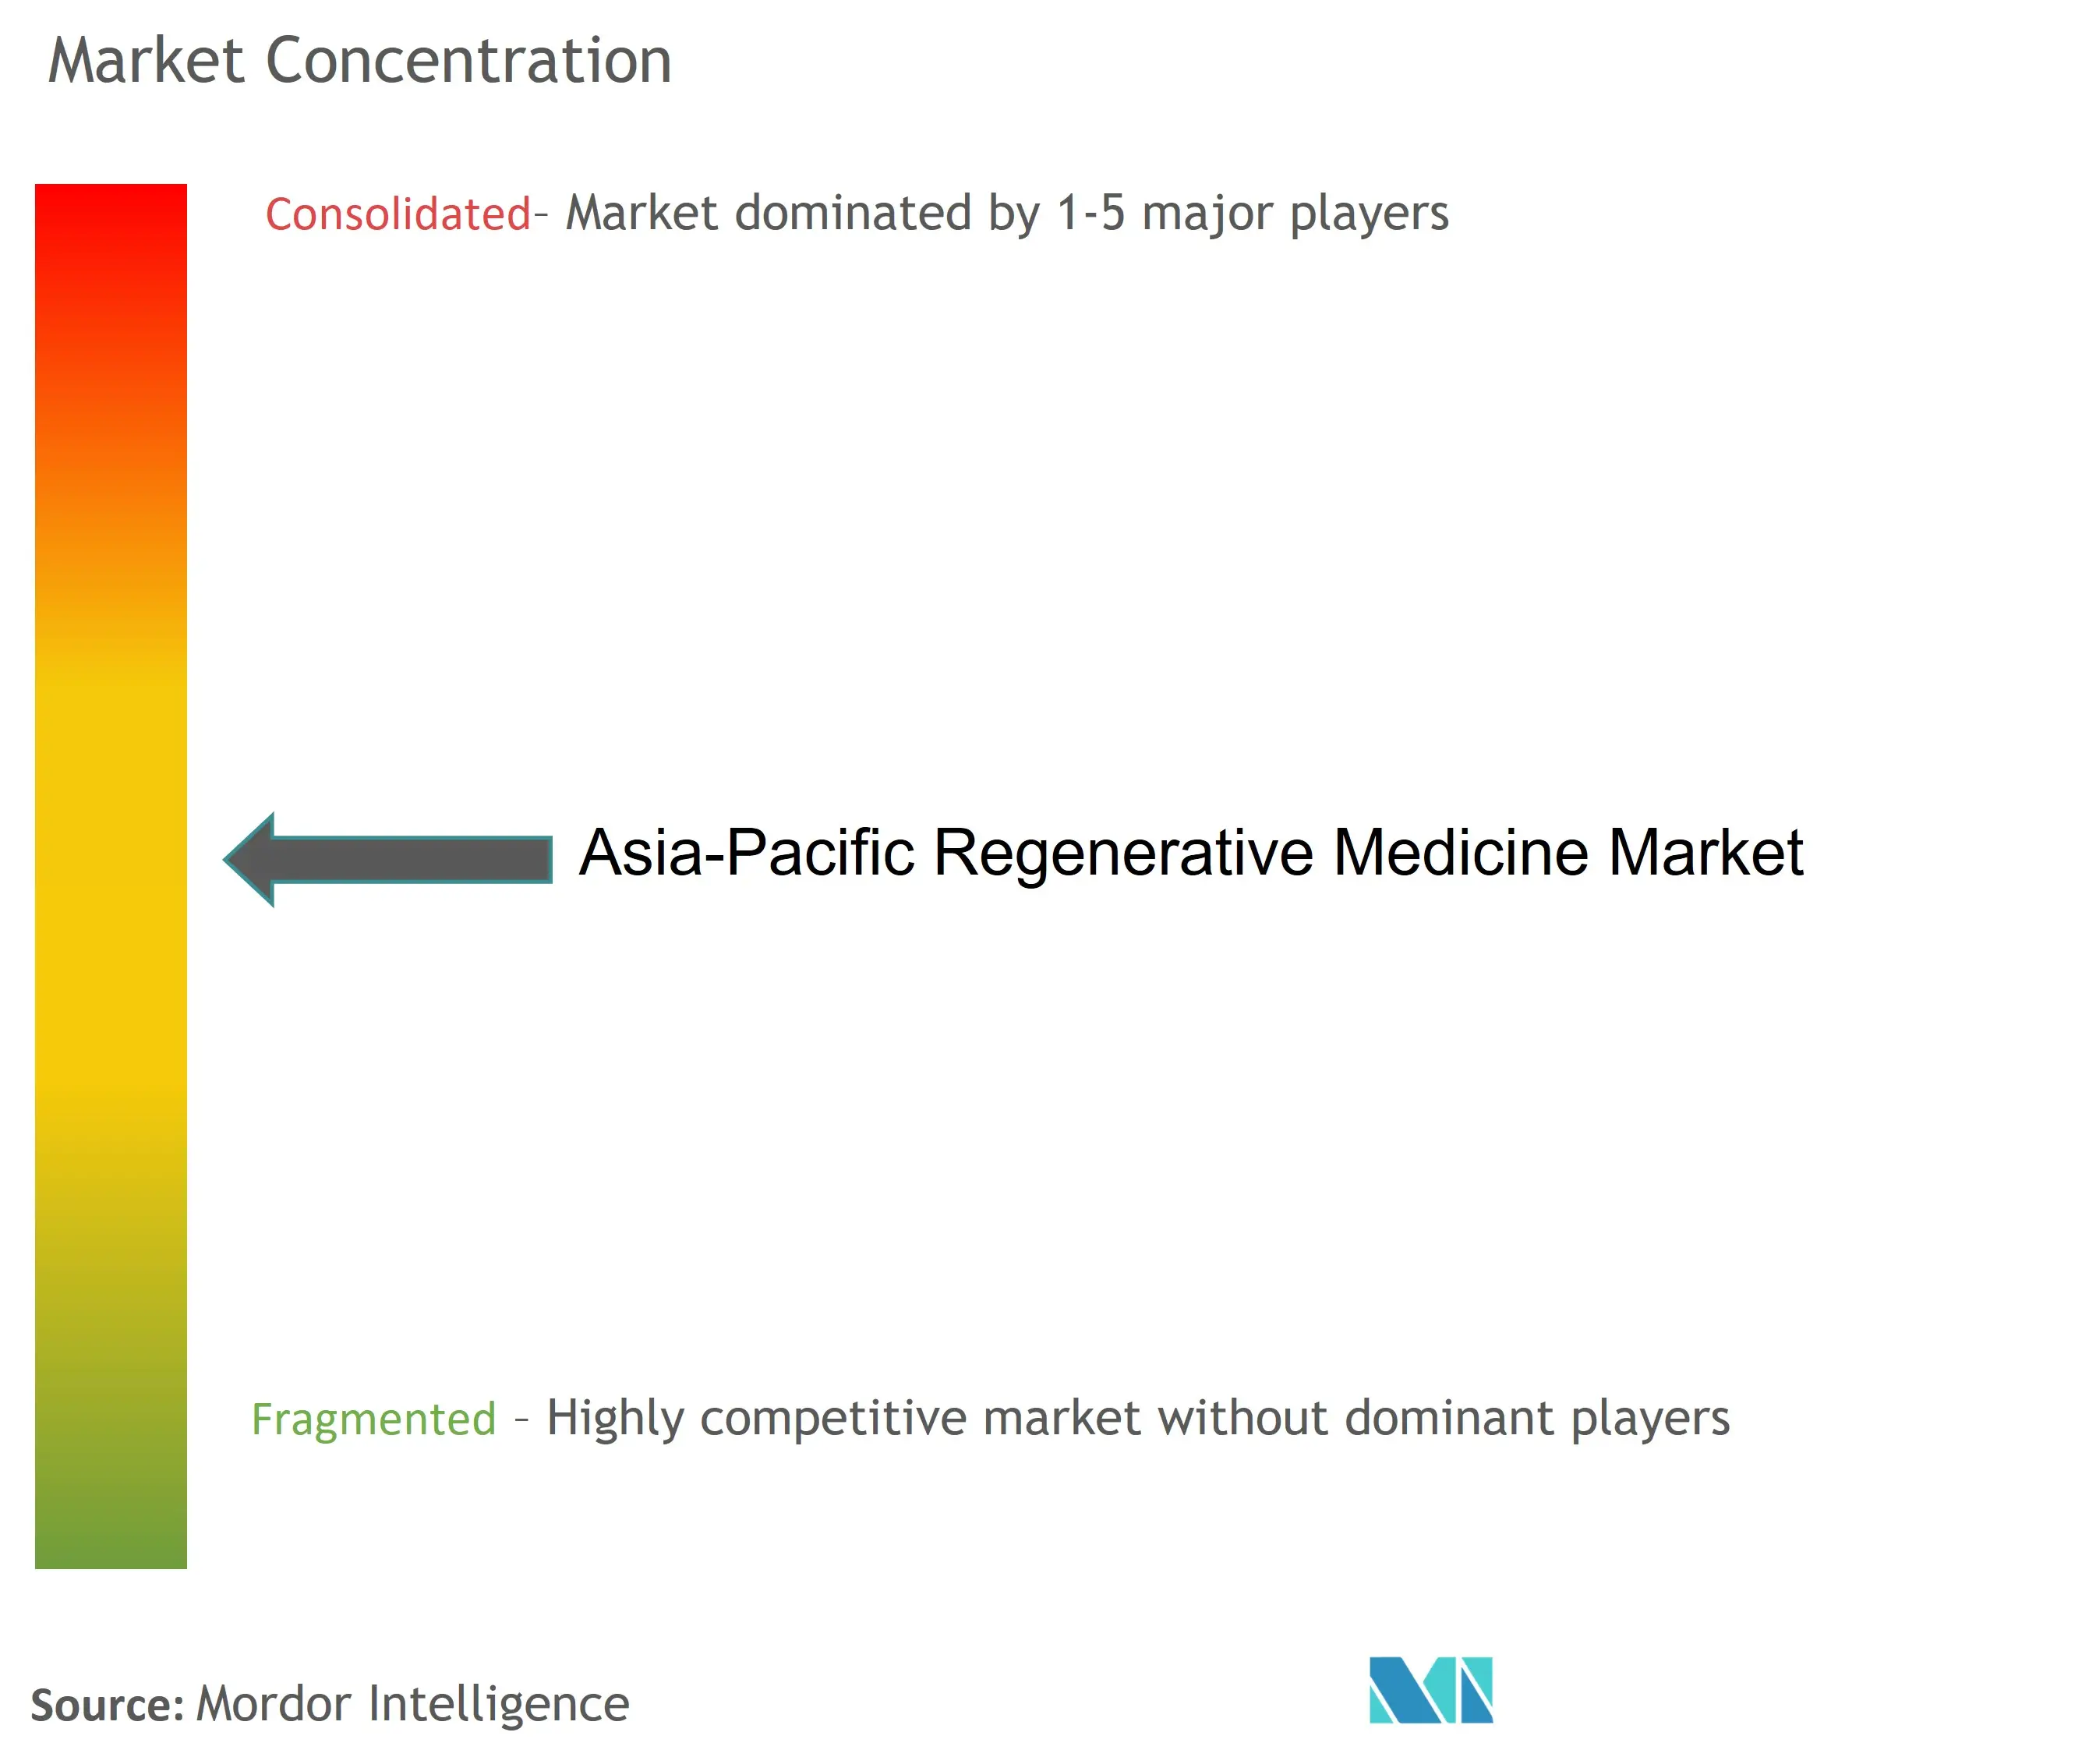 Médecine régénérative Asie-PacifiqueConcentration du marché